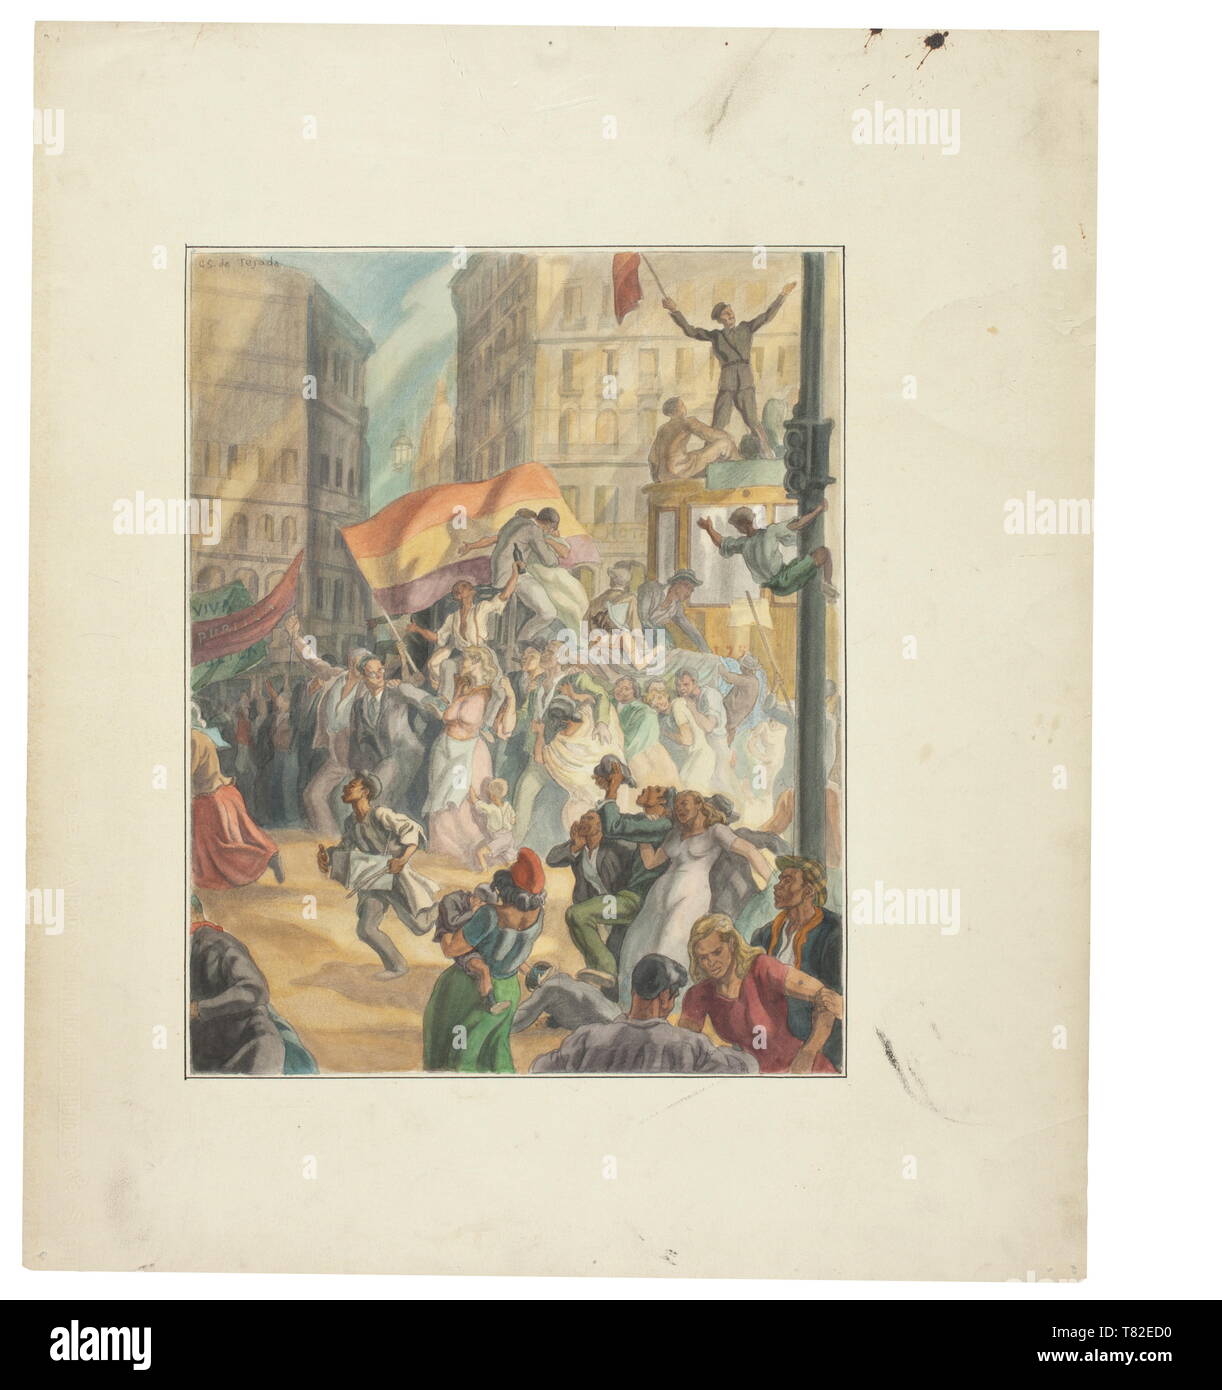 Carlos Sáenz de Tejada (1897-1958) - Viva La Republica eine Studie der revolutionären Kämpfe während des Bürgerkriegs (1936-39), die von den berühmten Spanischen Maler. Multi - farbige Zeichnung auf Karton, mit dem Namen des Maker" Carl Schleicher & Sohn', Wasser Farben und Weiß gehöht geprägt. Die hand gezeichnete Bild zeigt die Bürger von Madrid in der Straße "Puerta del Sol" feiern ihren Sieg. Auch dargestellt: eine Frau mit einer "BARRETINA', einem traditionellen Kopfbedeckungen, Fahnen in den Farben Rot, Gelb und Lila oder mit der Aufschrift 'Viva La Republica". Unterzeichnet "C. S., Additional-Rights - Clearance-Info - Not-Available Stockfoto